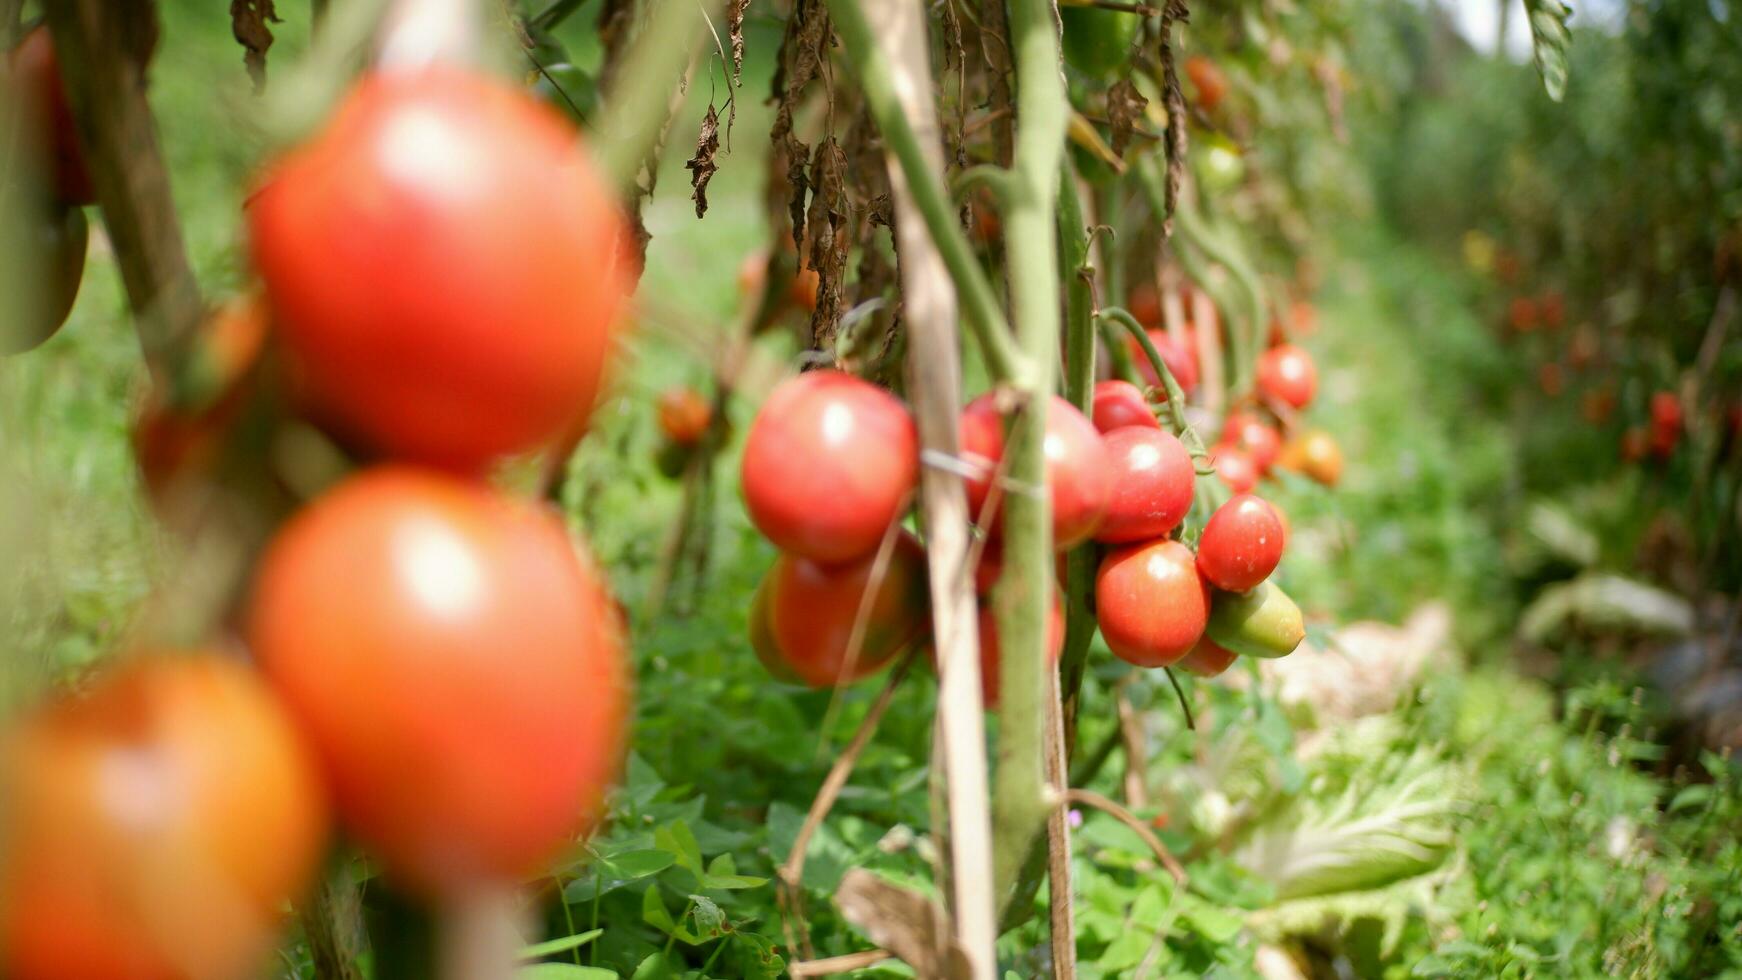 rijp tomaat fabriek groeit in tuin. vers bundel van rood natuurlijk tomaten Aan Afdeling in biologisch groente tuin. biologisch landbouw, gezond voedsel, , terug naar natuur concept.tuinieren tomaat fotograaf foto